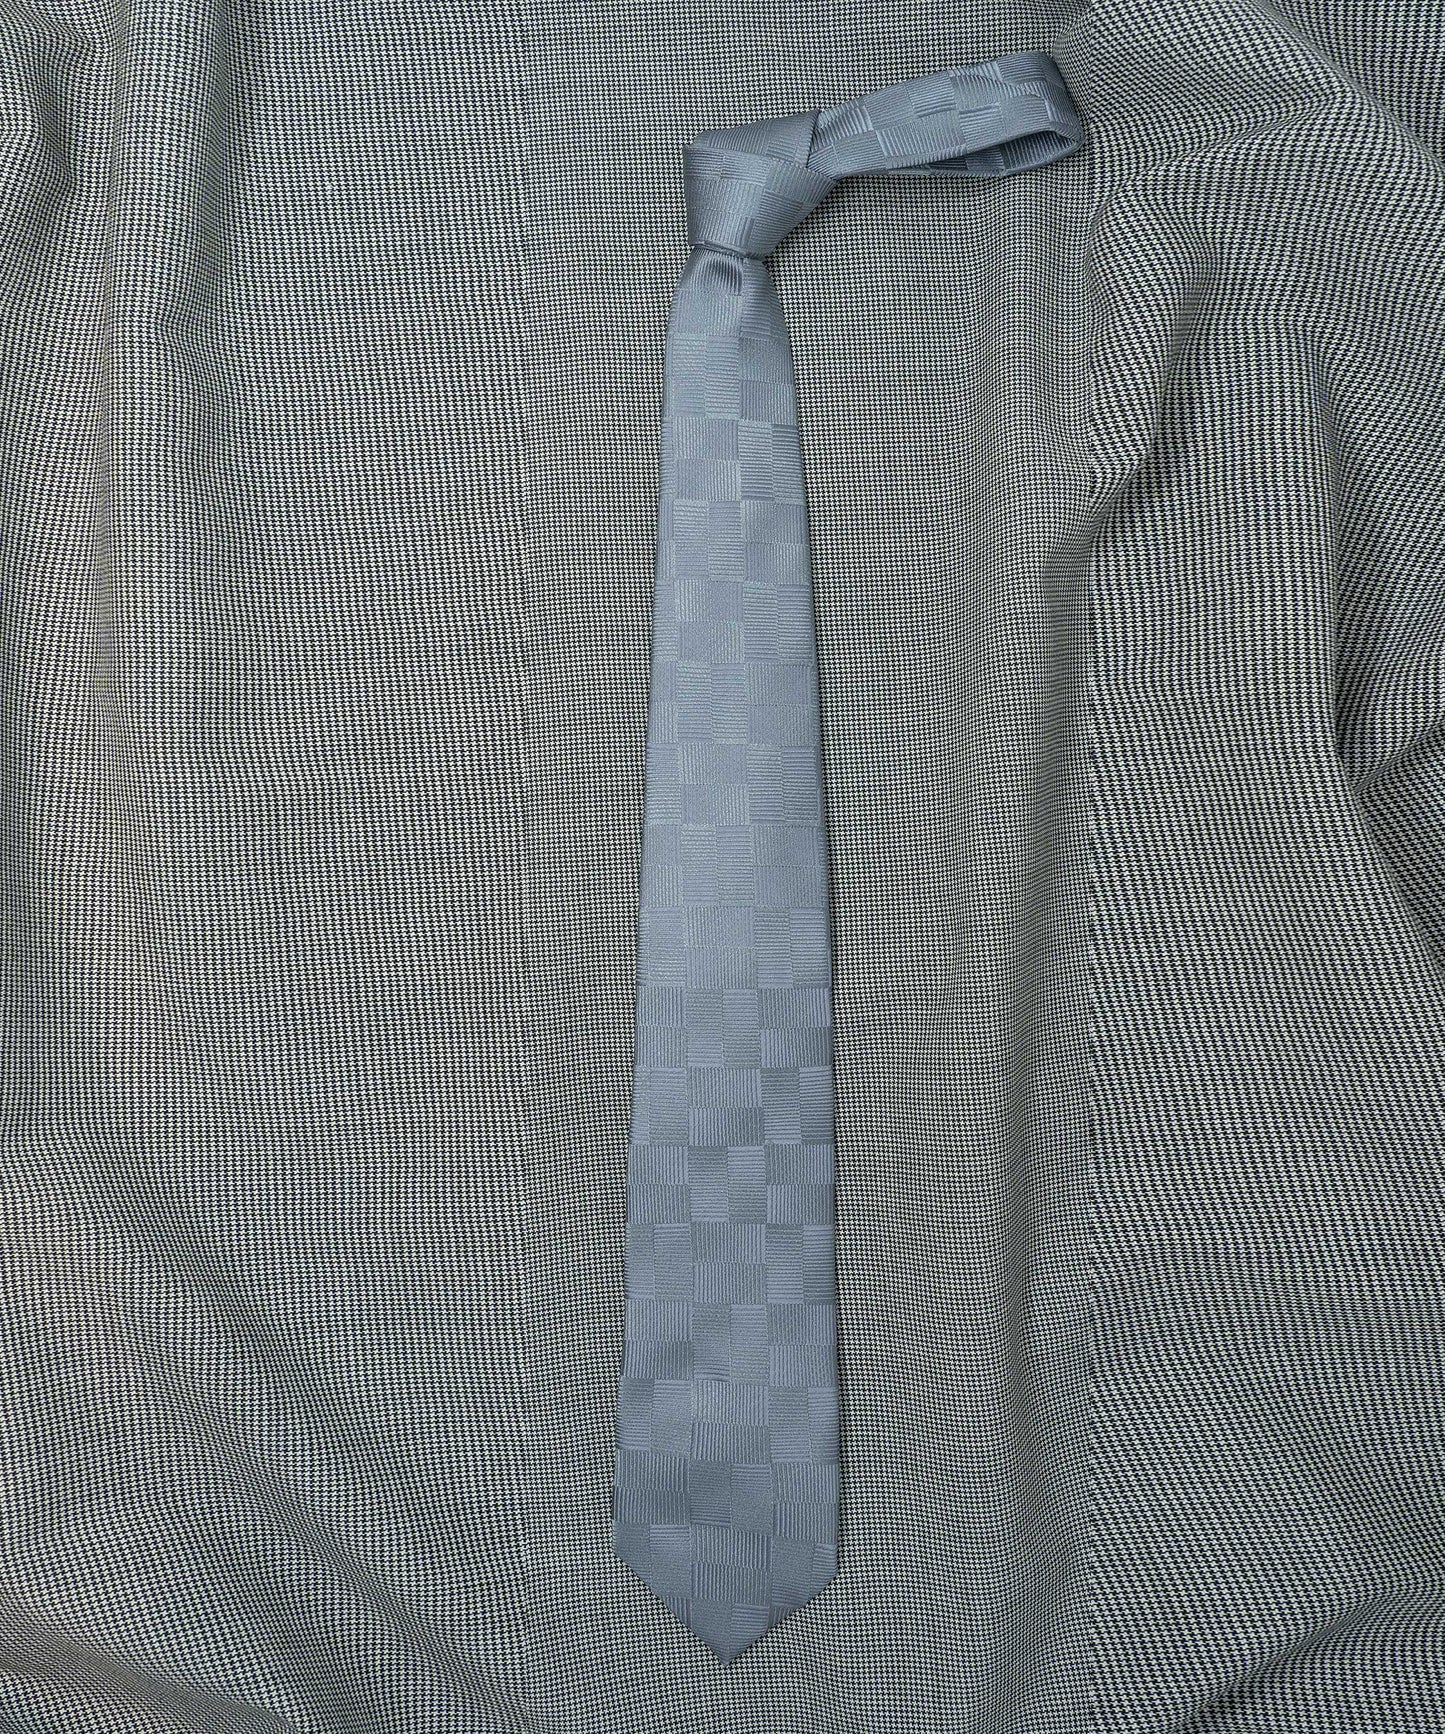 Town Hall Necktie